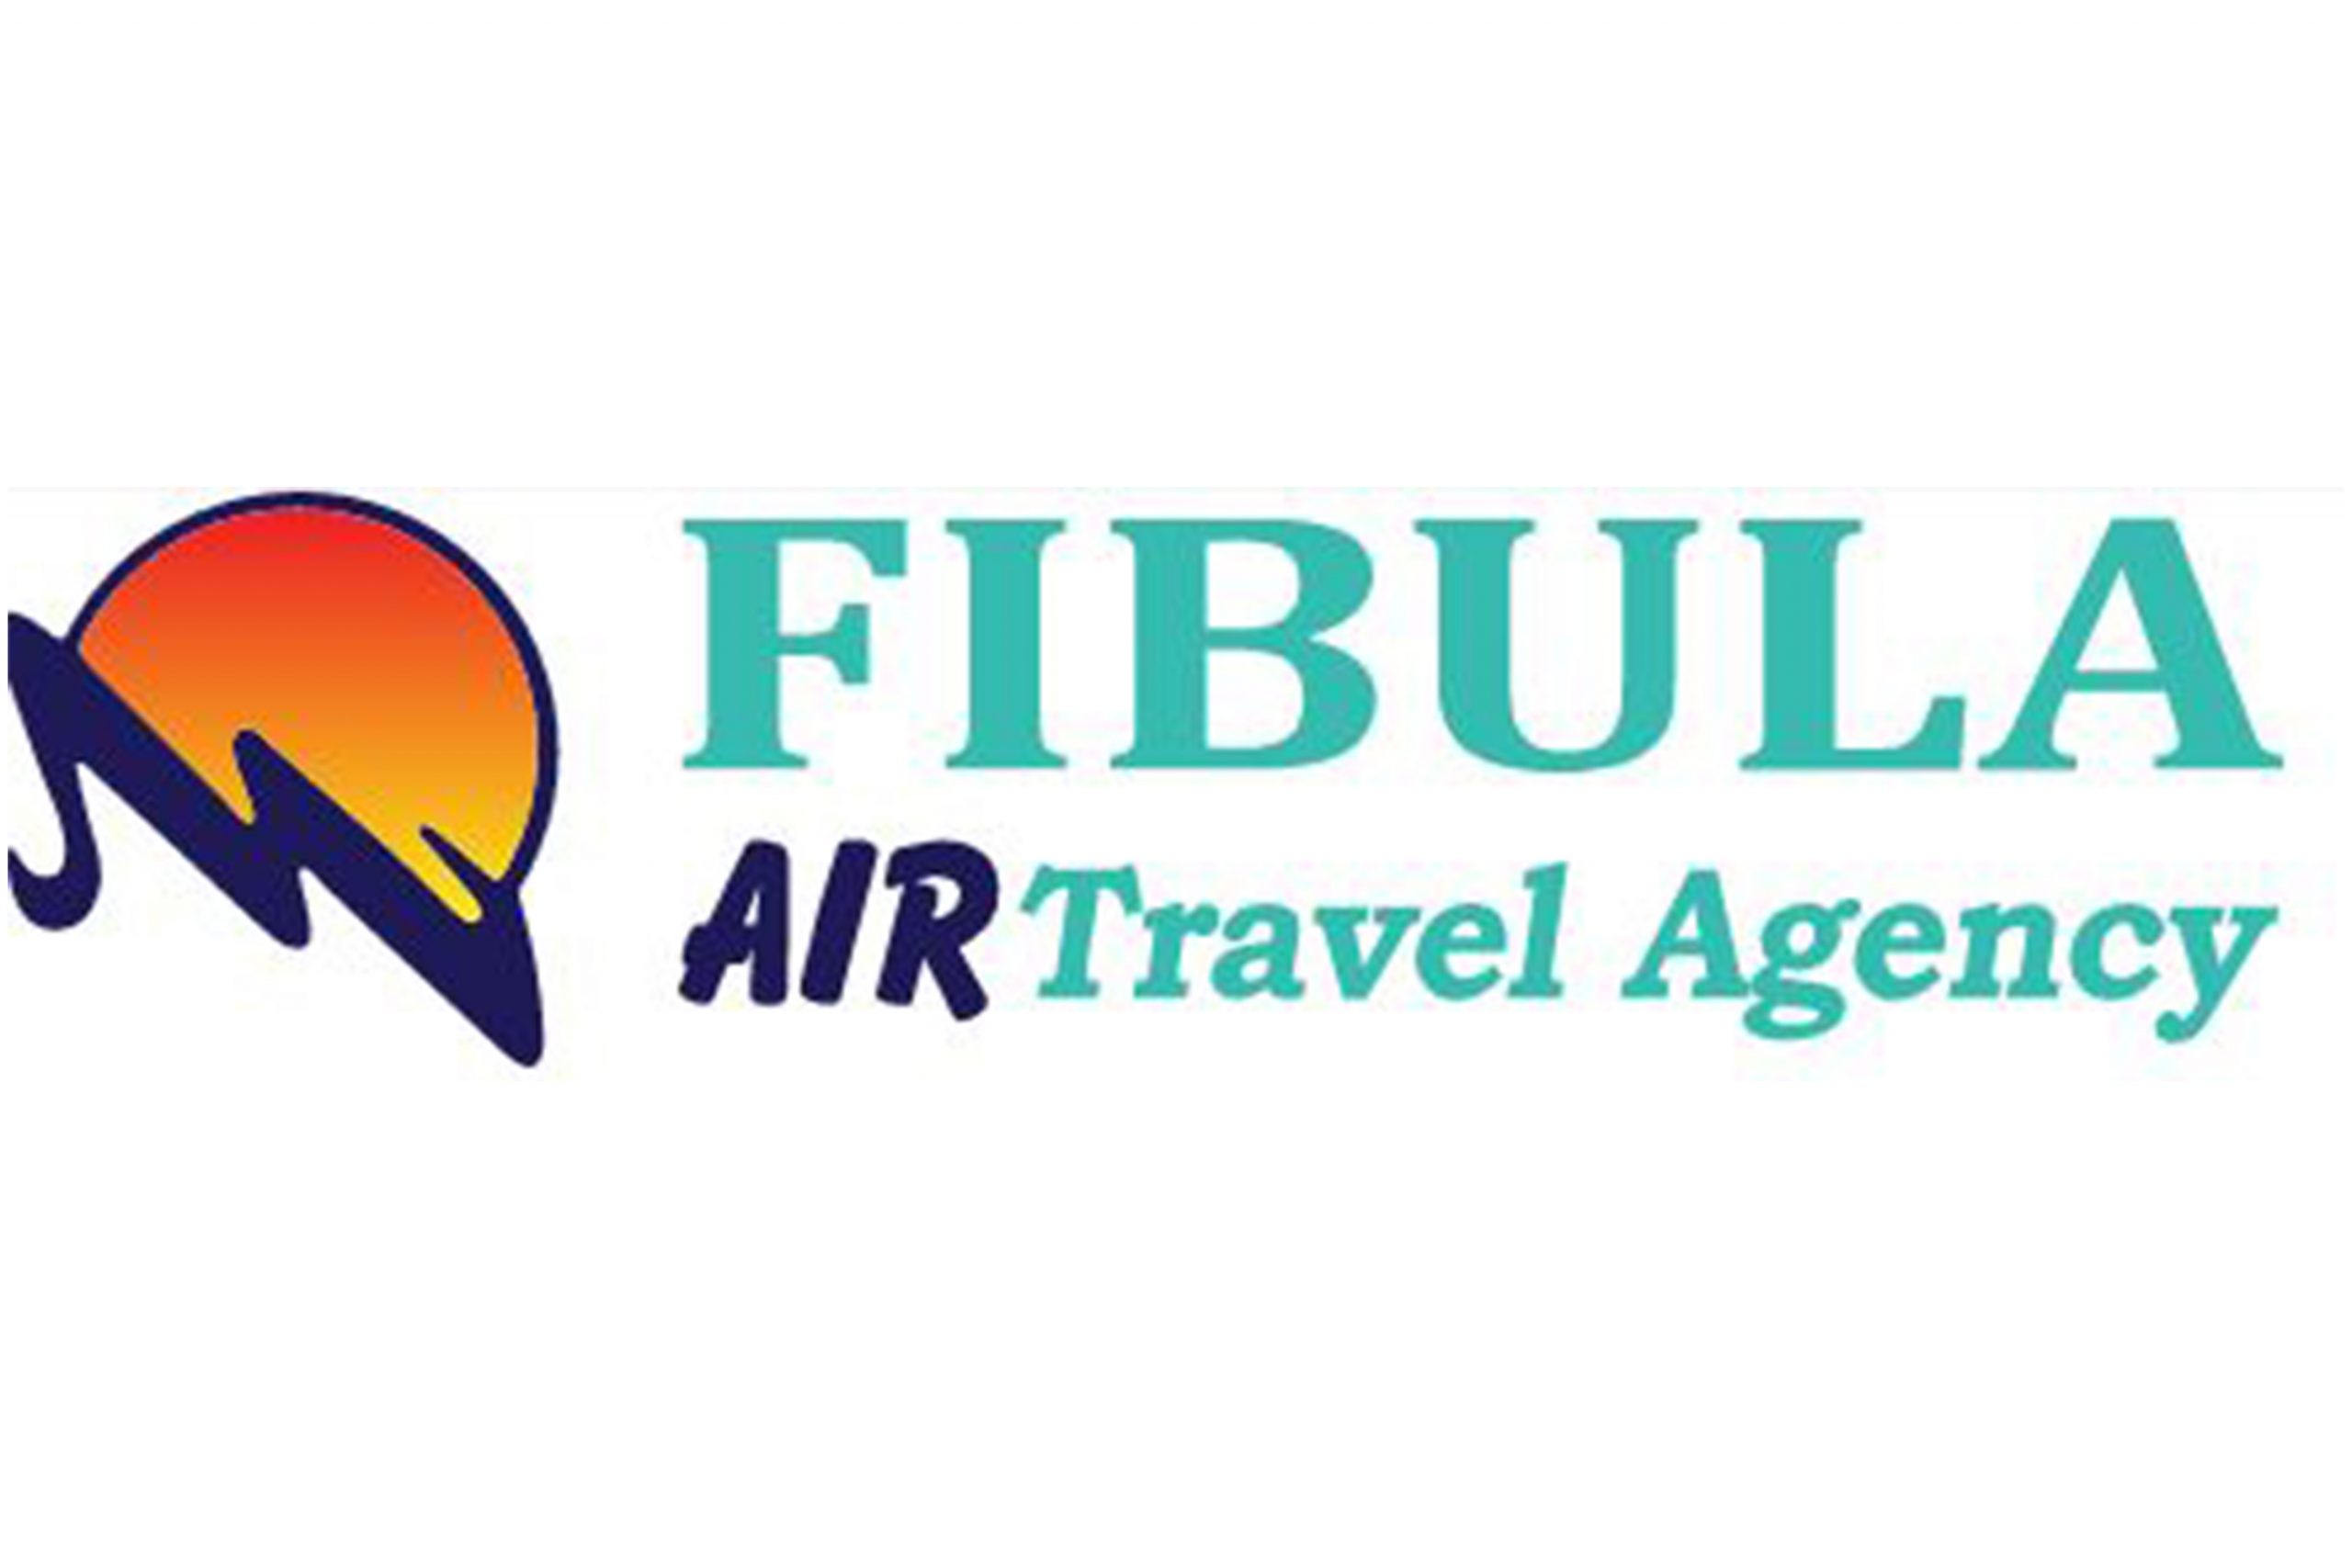 fibula travel agency kosovo